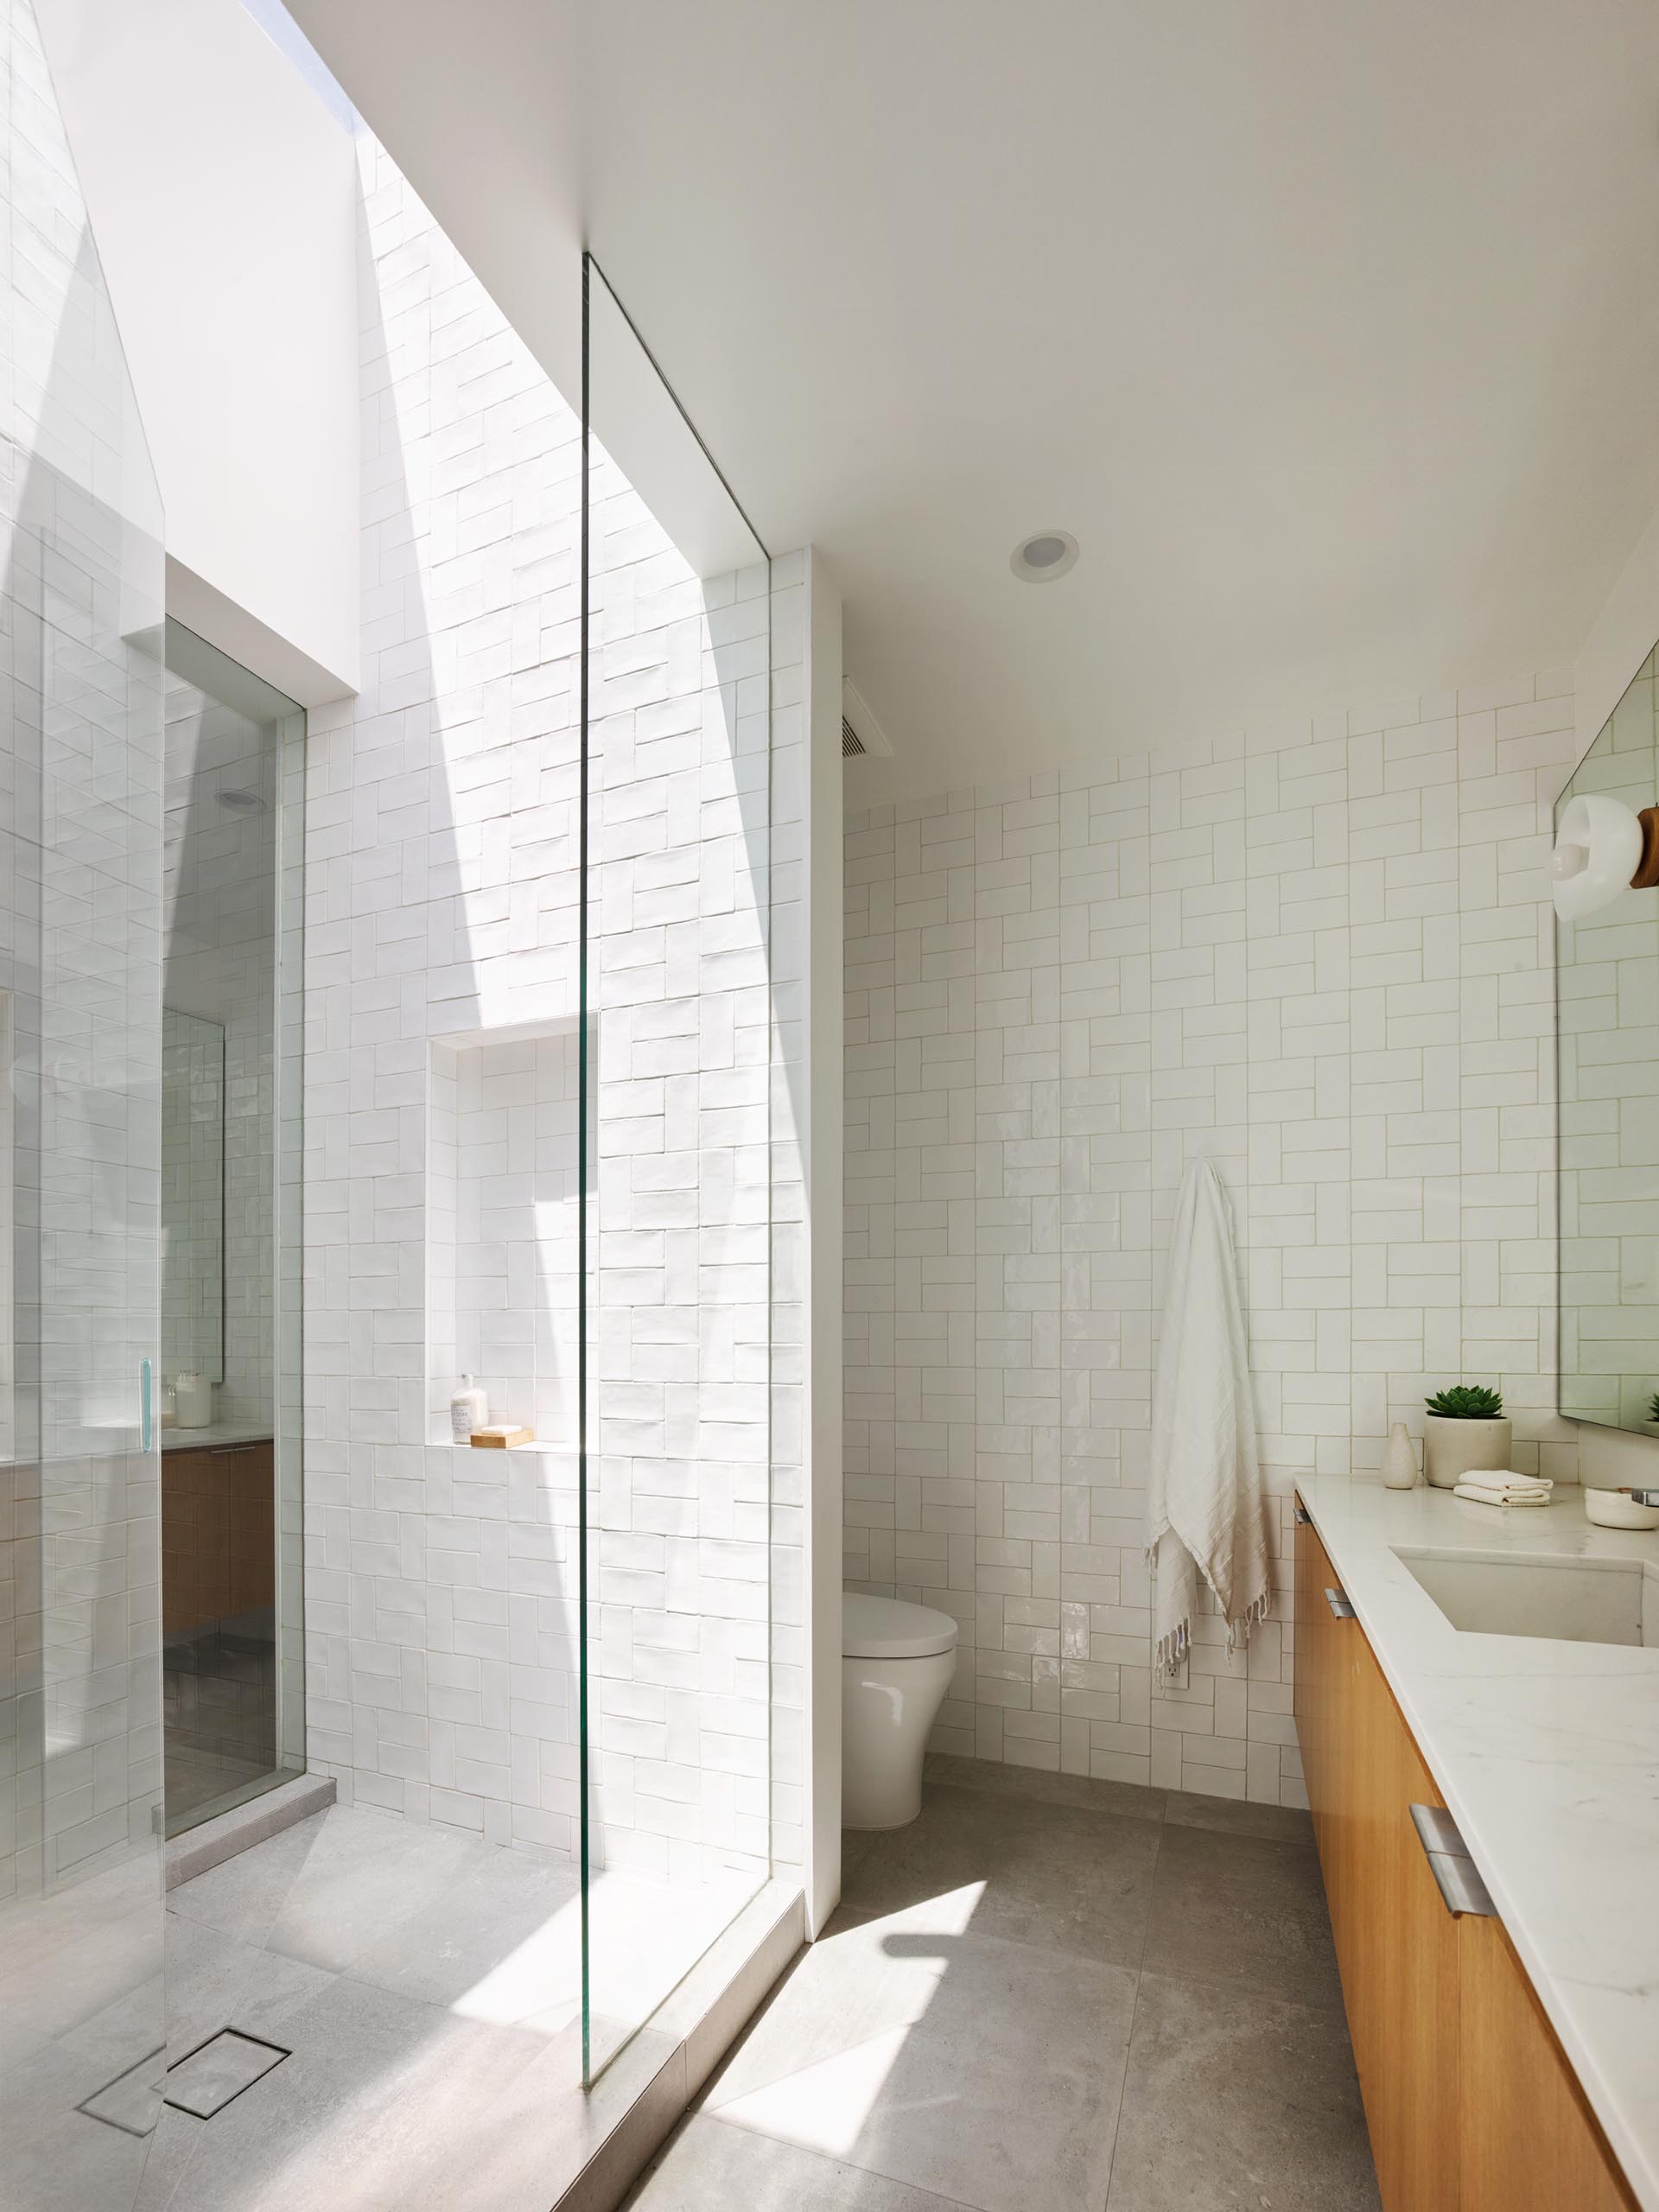 Современная ванная комната с душевой кабиной, облицованной белой плиткой, и потолочным окном, дающим много естественного света.